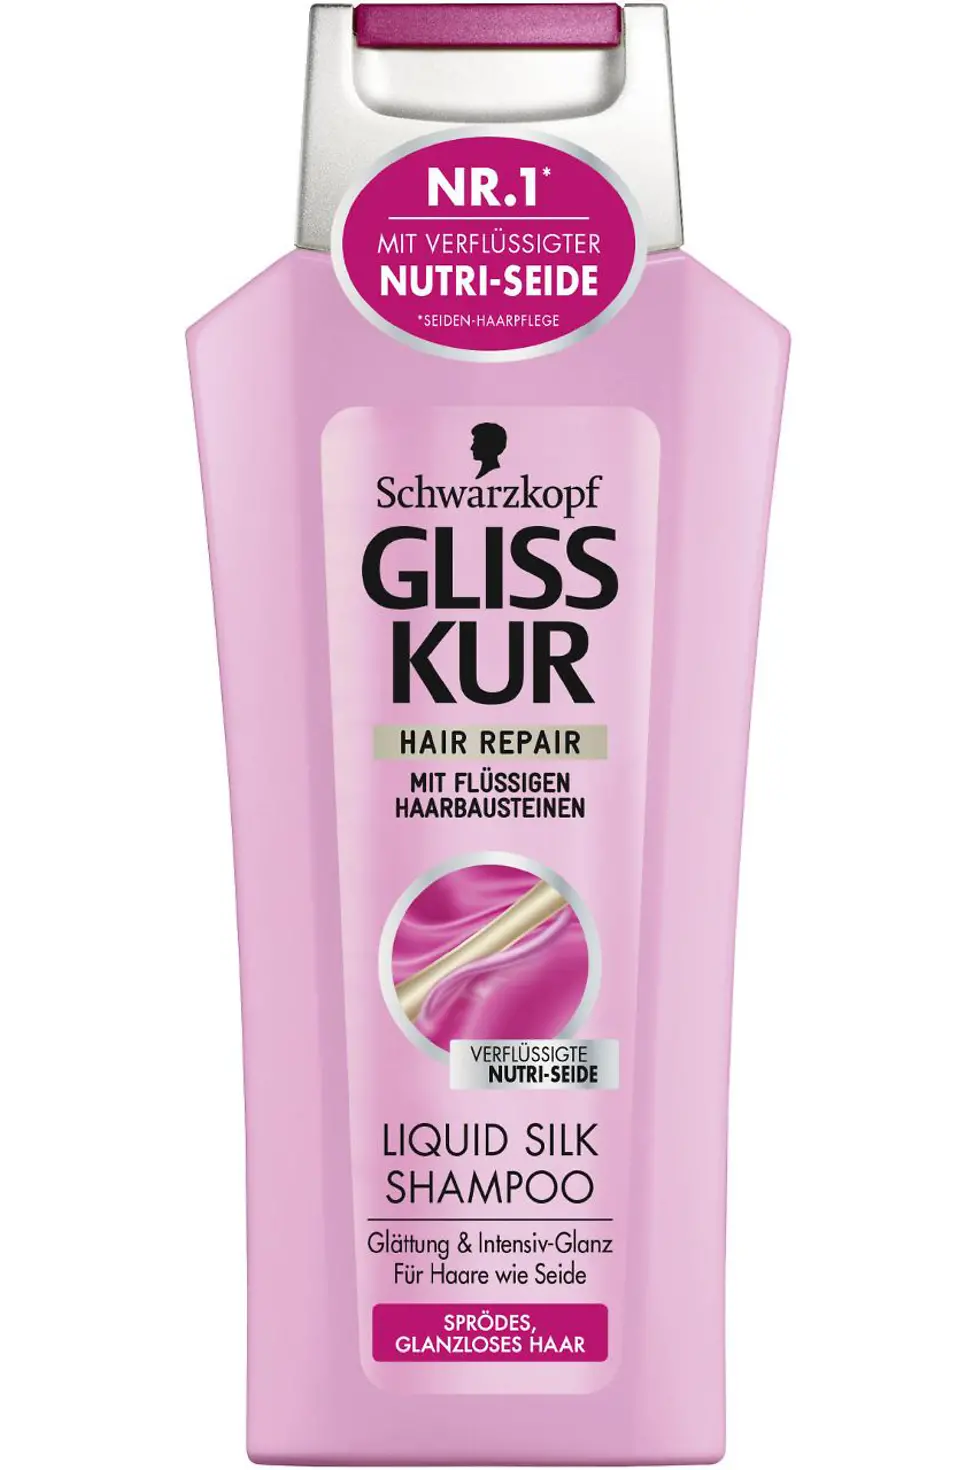 Gliss Kur Liquid Silk Shampoo